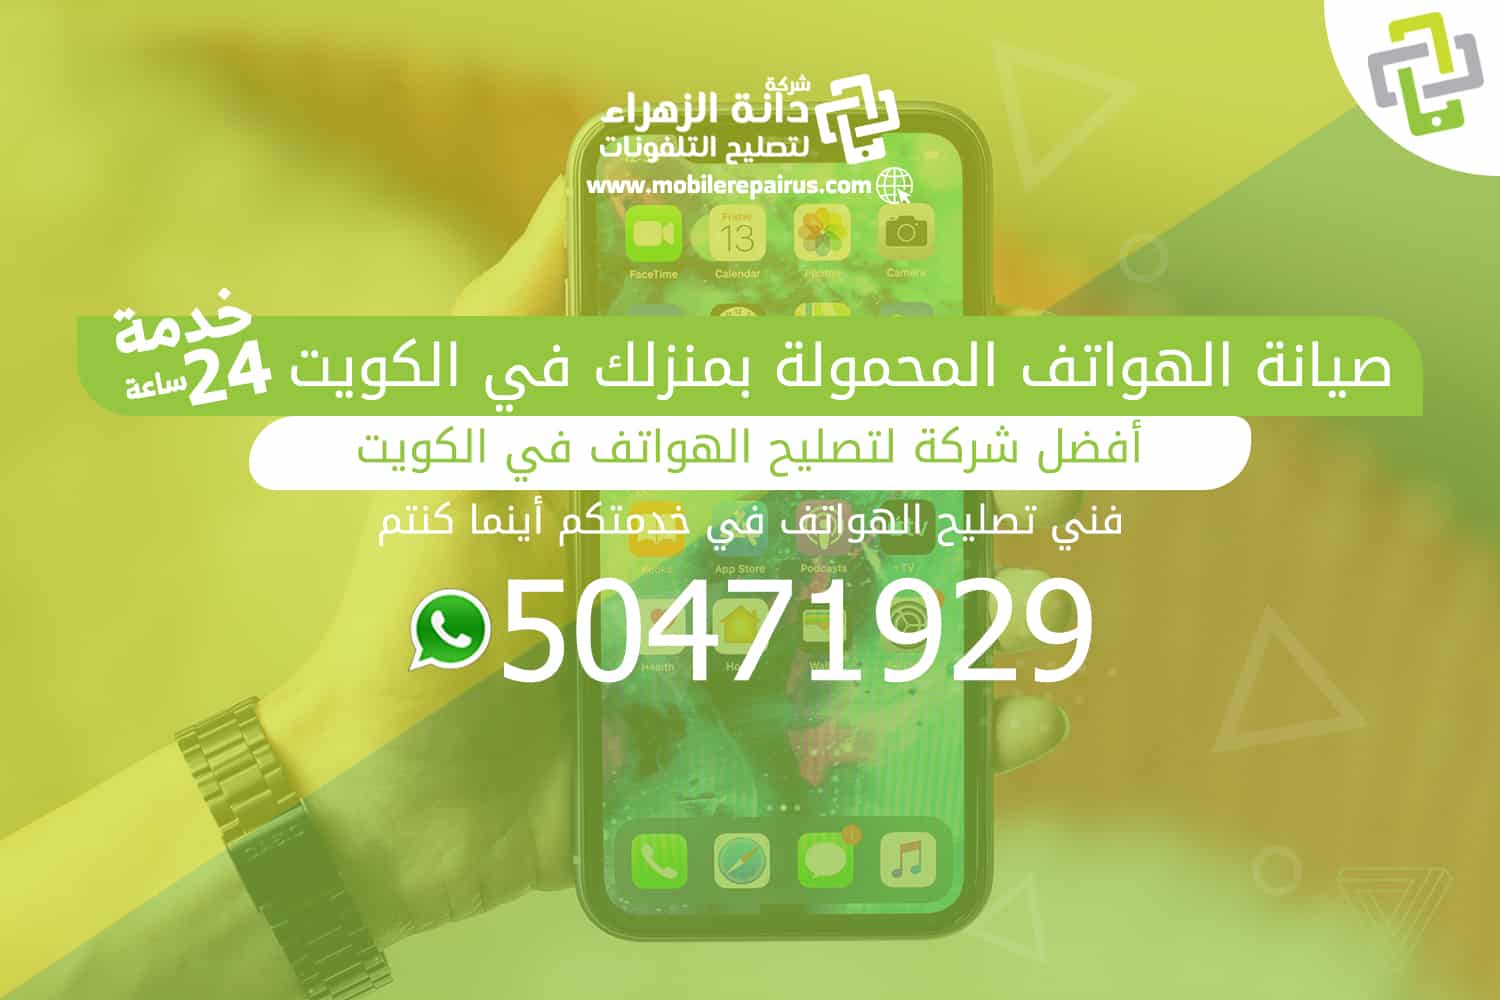 صيانة الهواتف المحمولة بمنزلك في الكويت